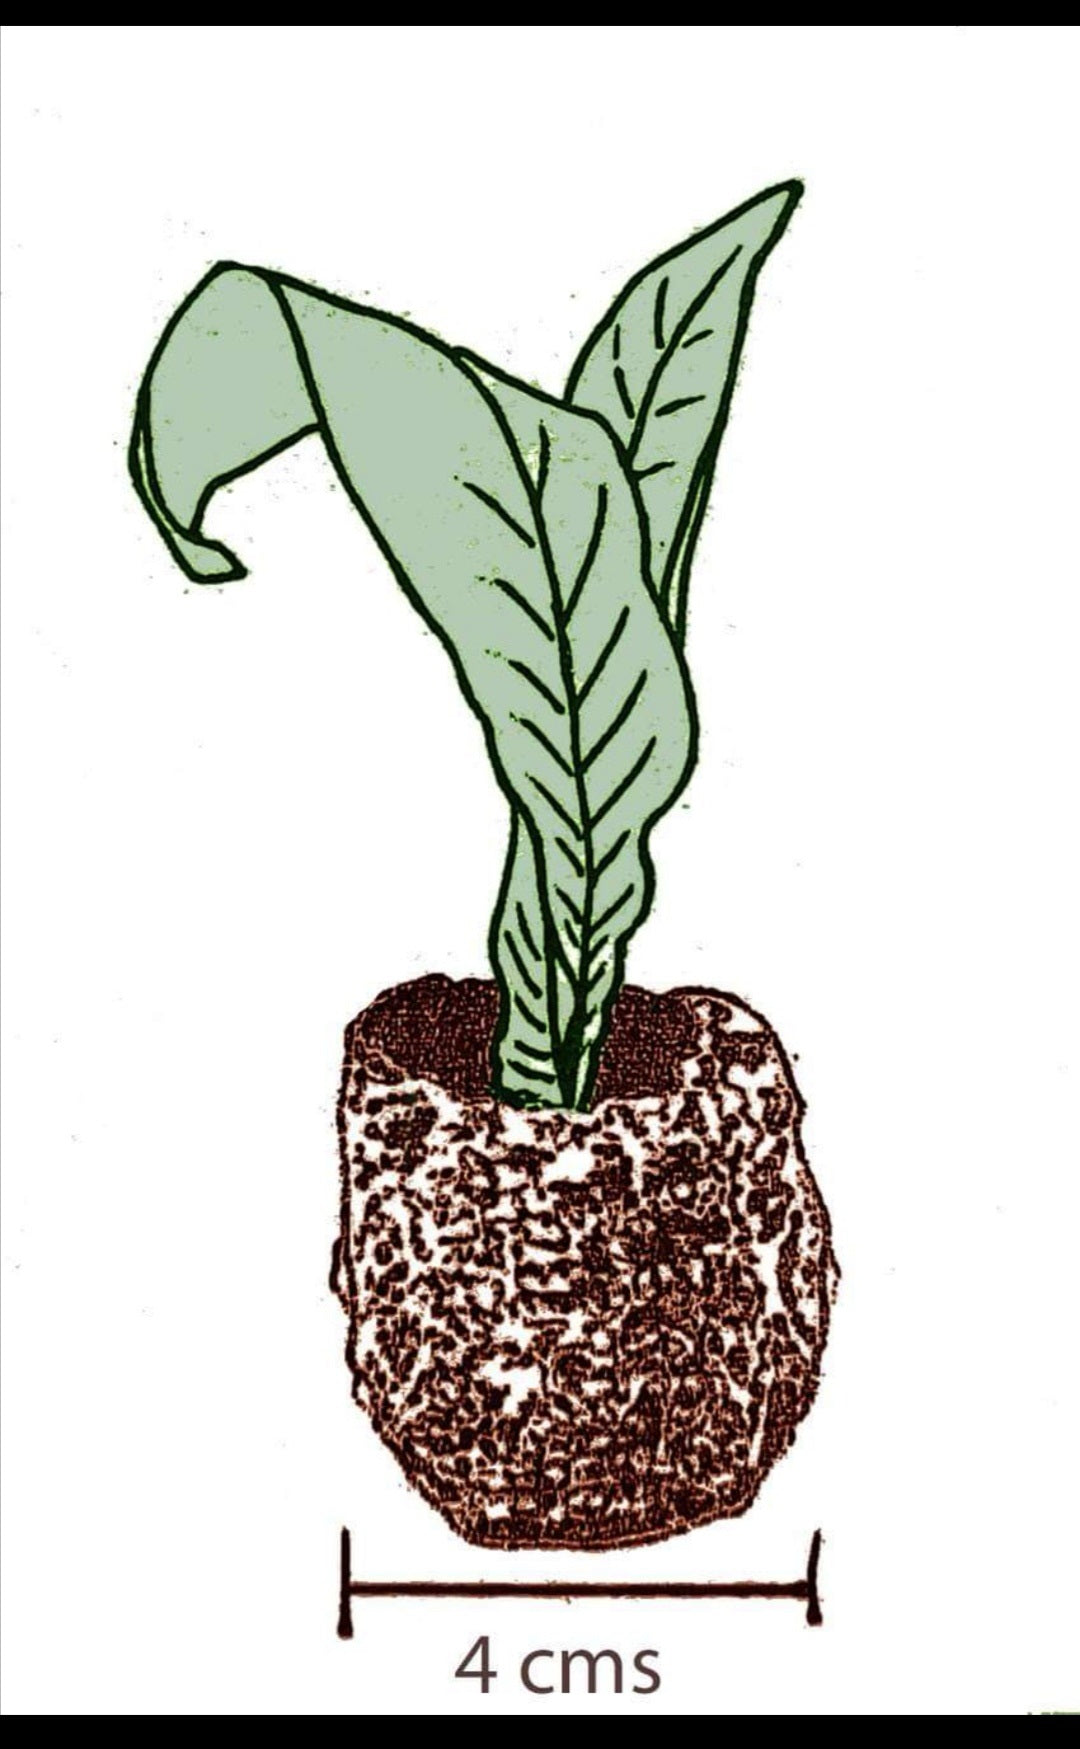 Streptocarpus Joanna